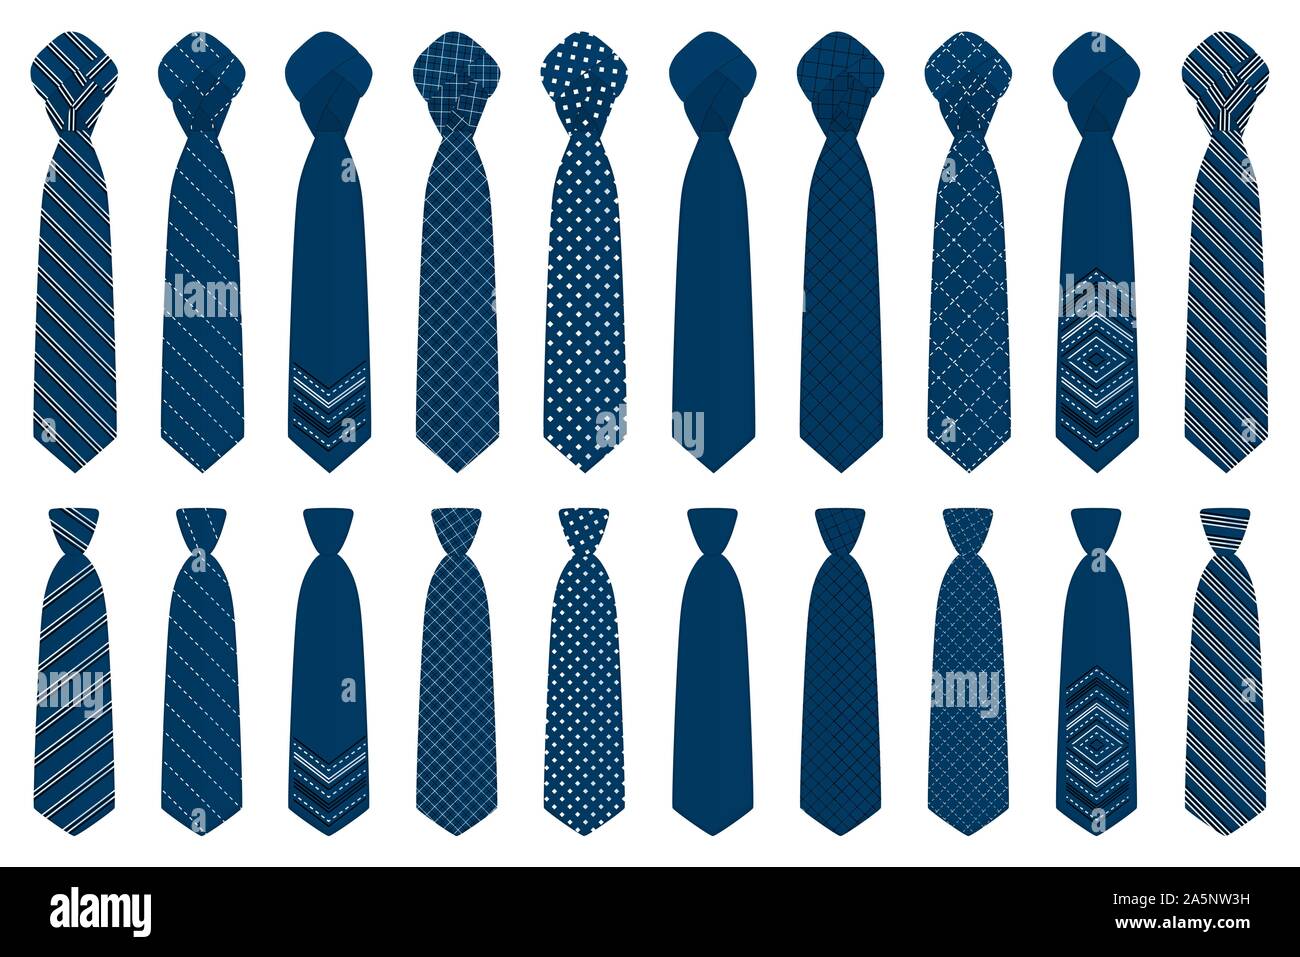 عملية تجارية تزين ازياء خاصة نظف غرفة النوم عطل الصبر differentes sortes de  cravates - socoproject.org